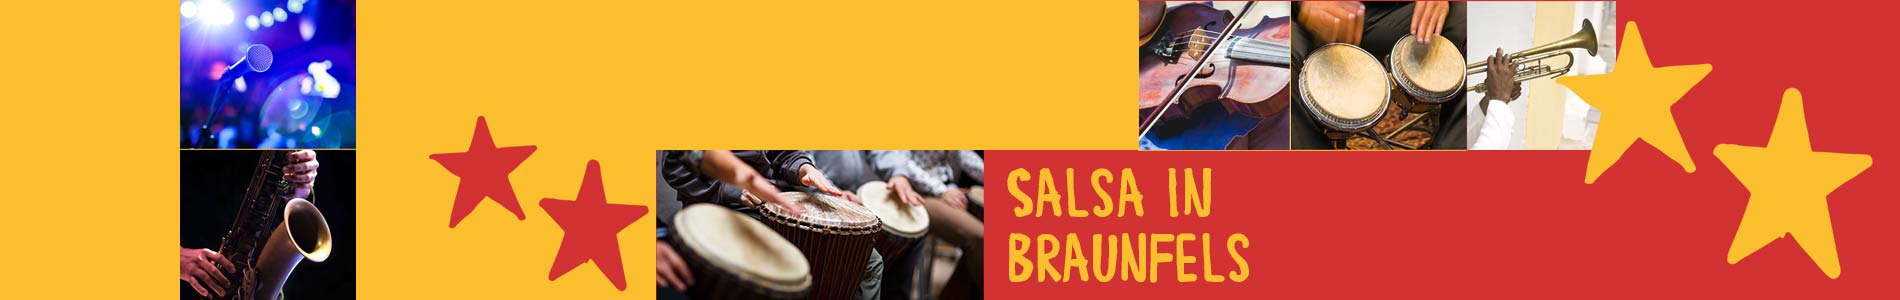 Salsa in Braunfels – Salsa lernen und tanzen, Tanzkurse, Partys, Veranstaltungen